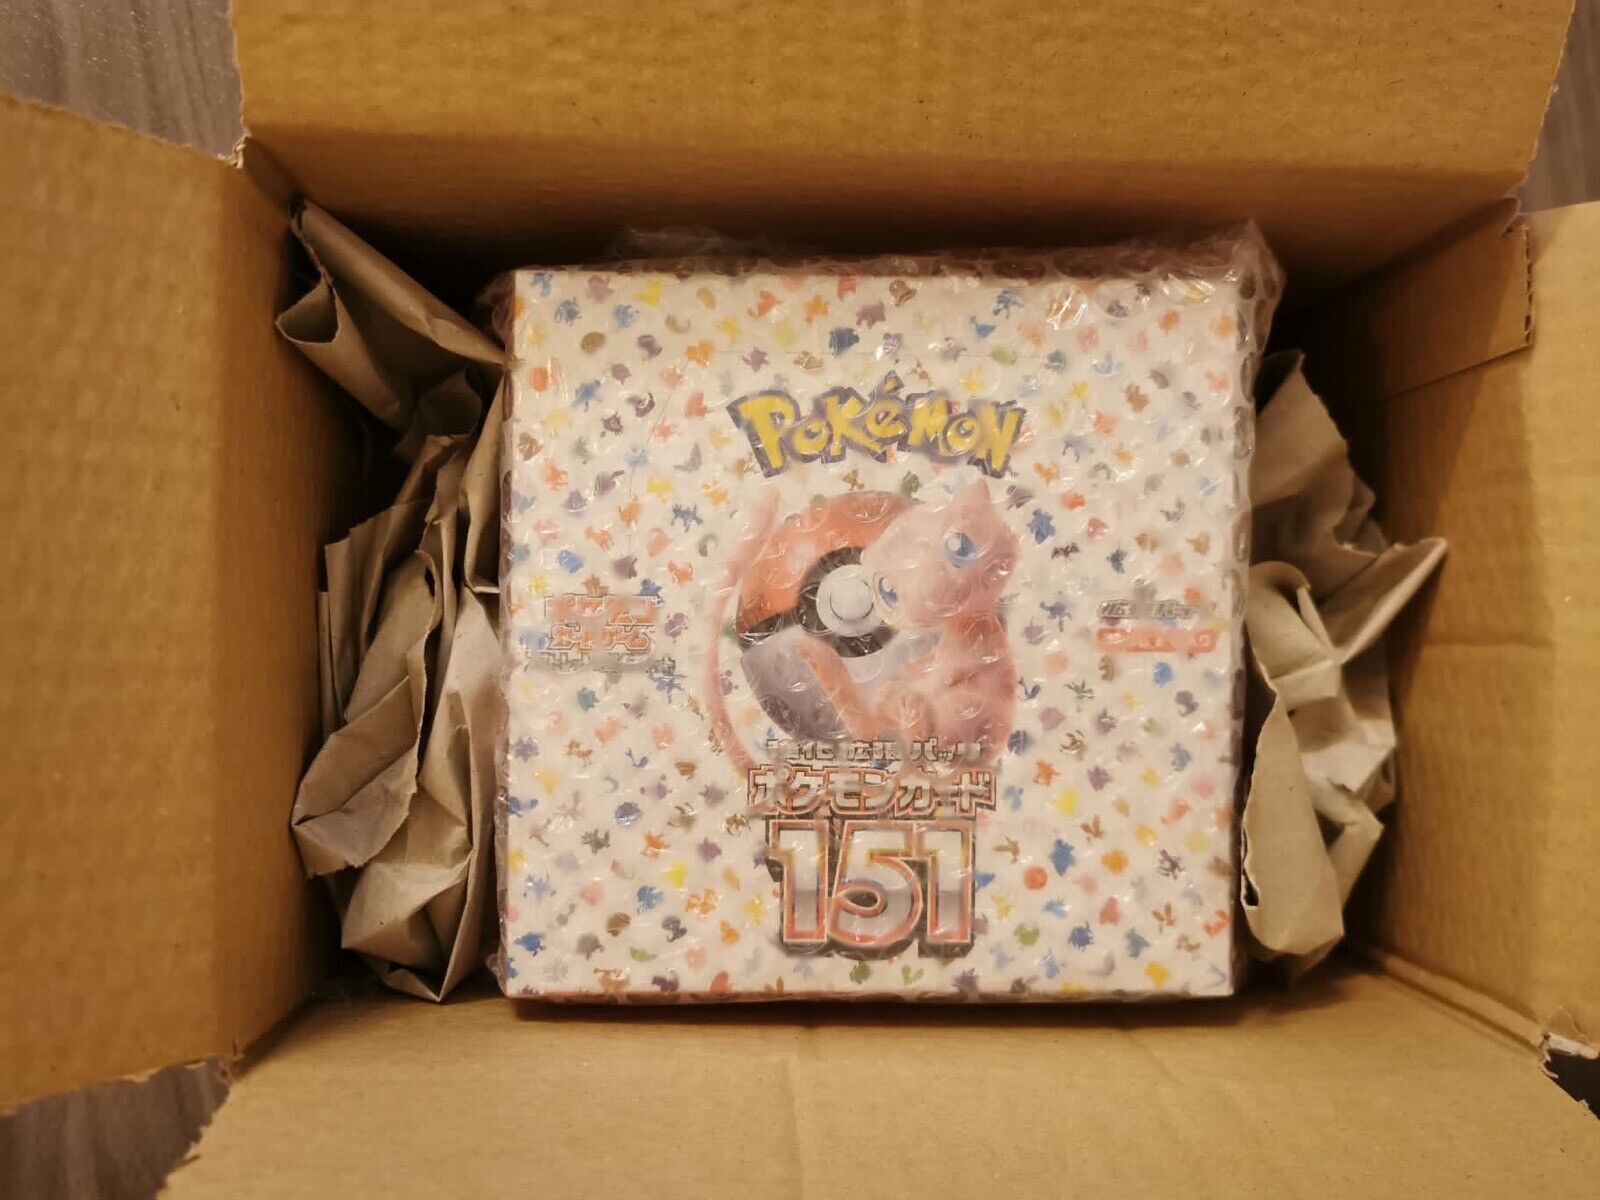 Pokémon TCG: 151 Japanese Pokemon Booster Box x1 - Ready To Ship Now